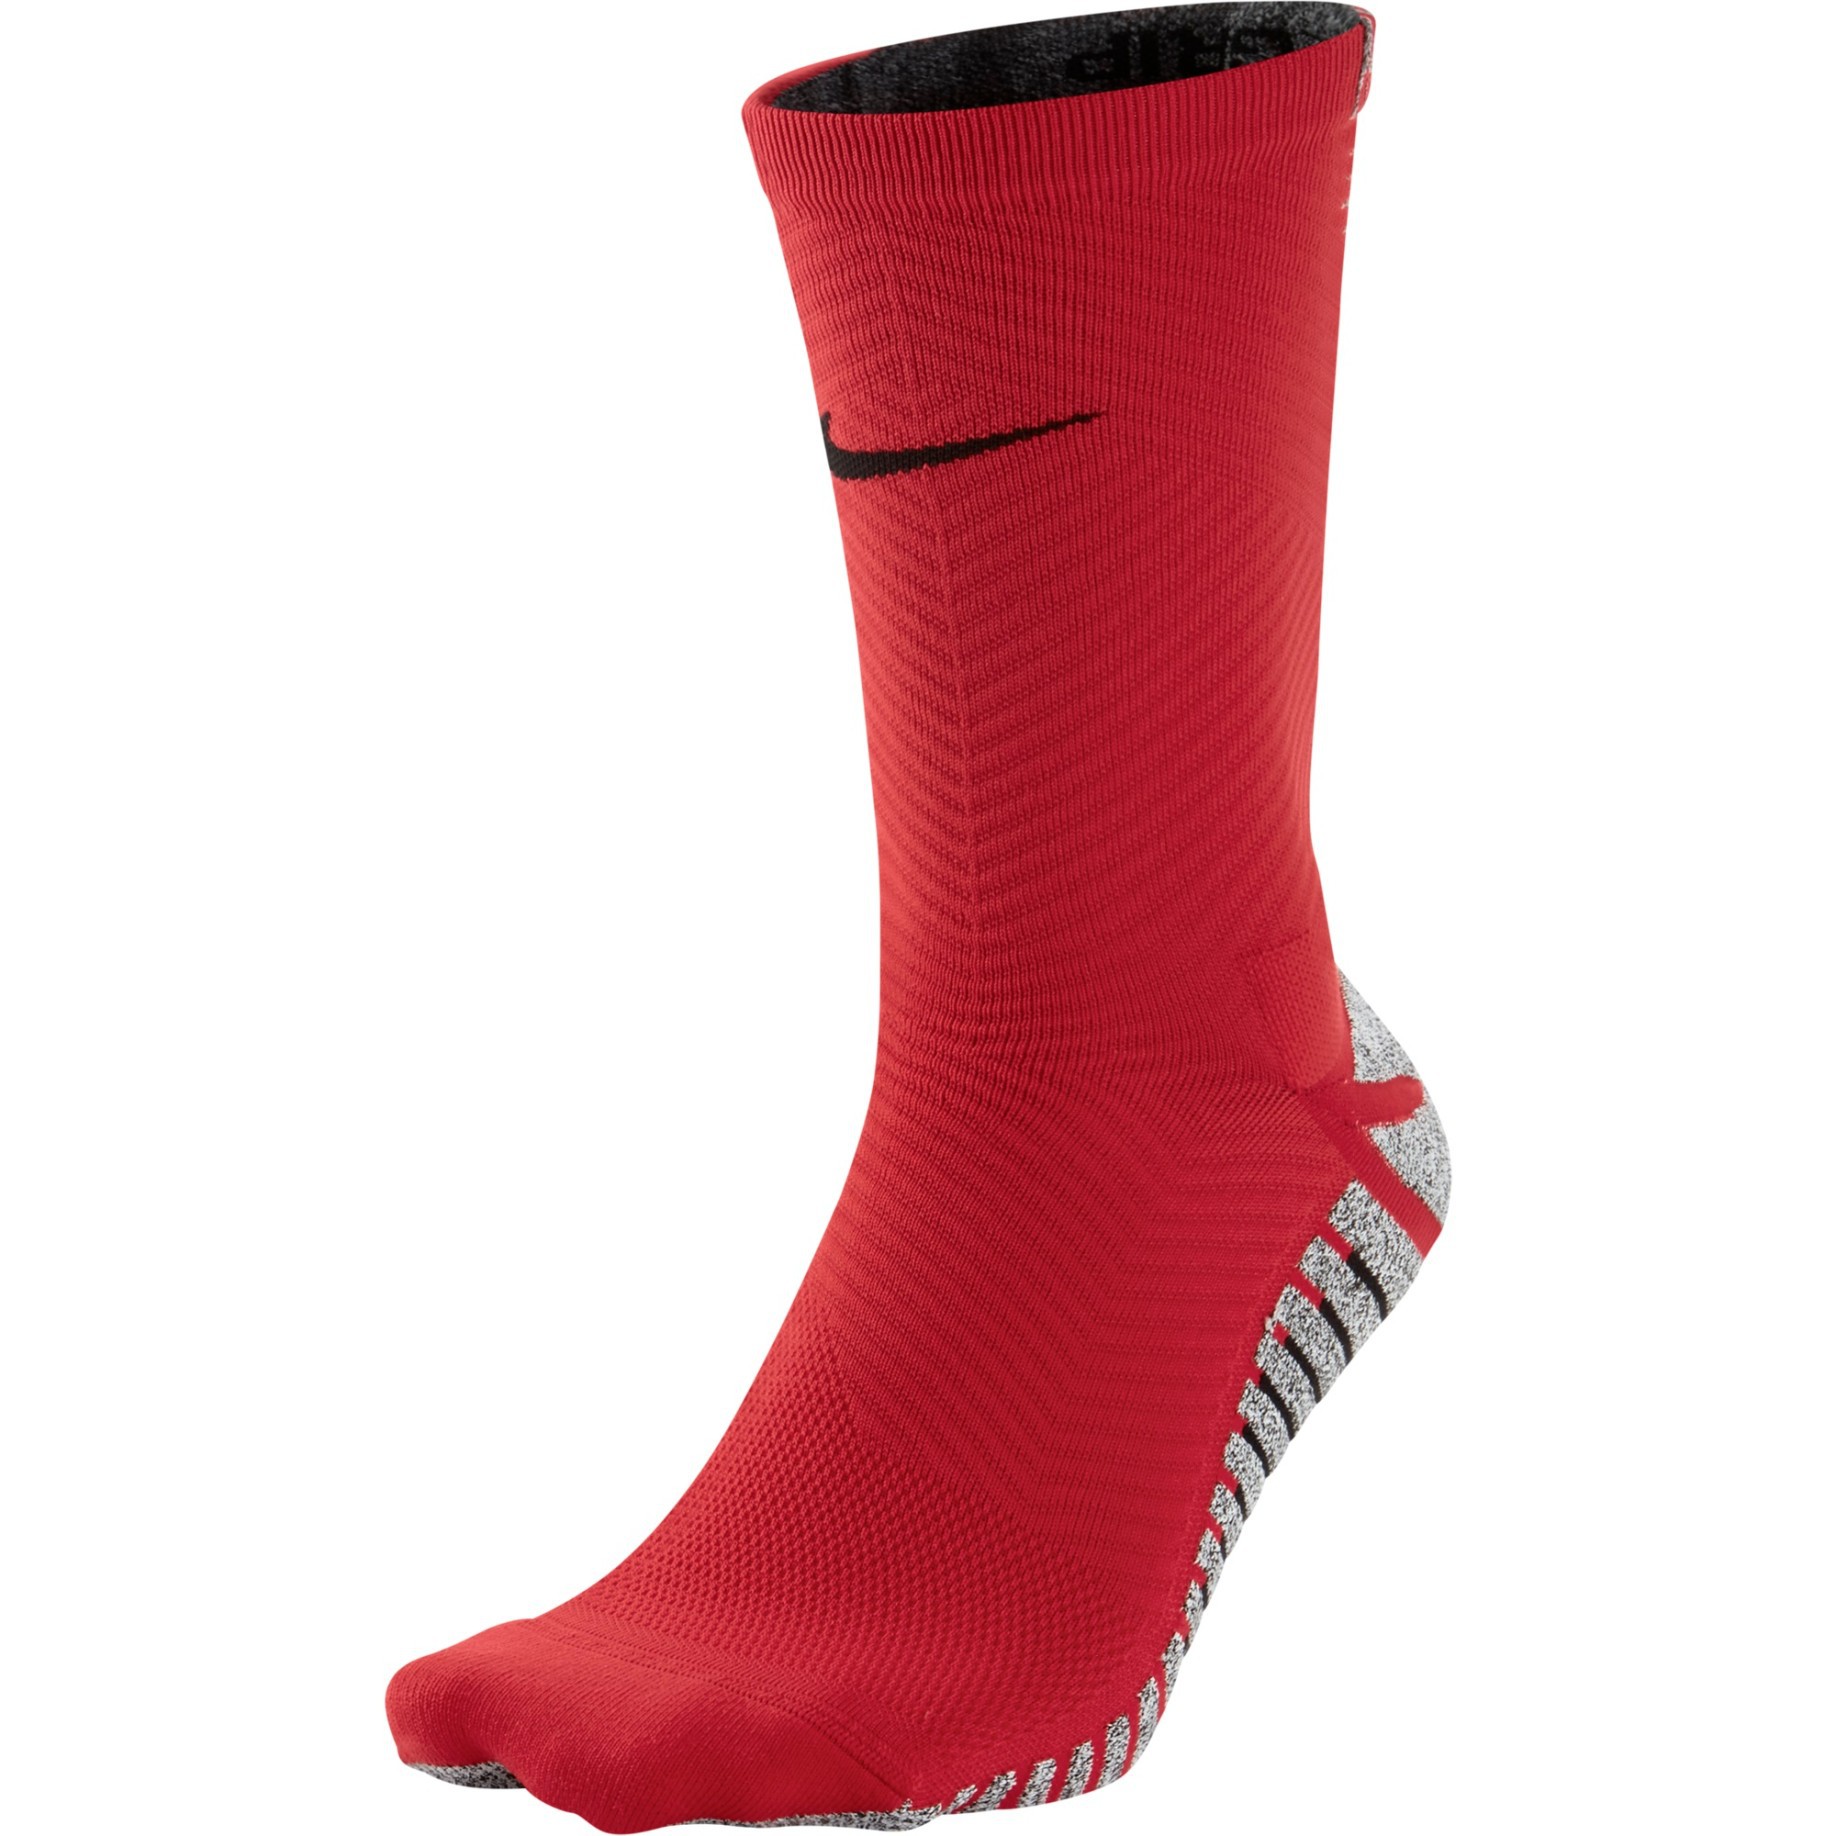 Calze Calcio Nike Grip colore Rosso - Nike - SportIT.com